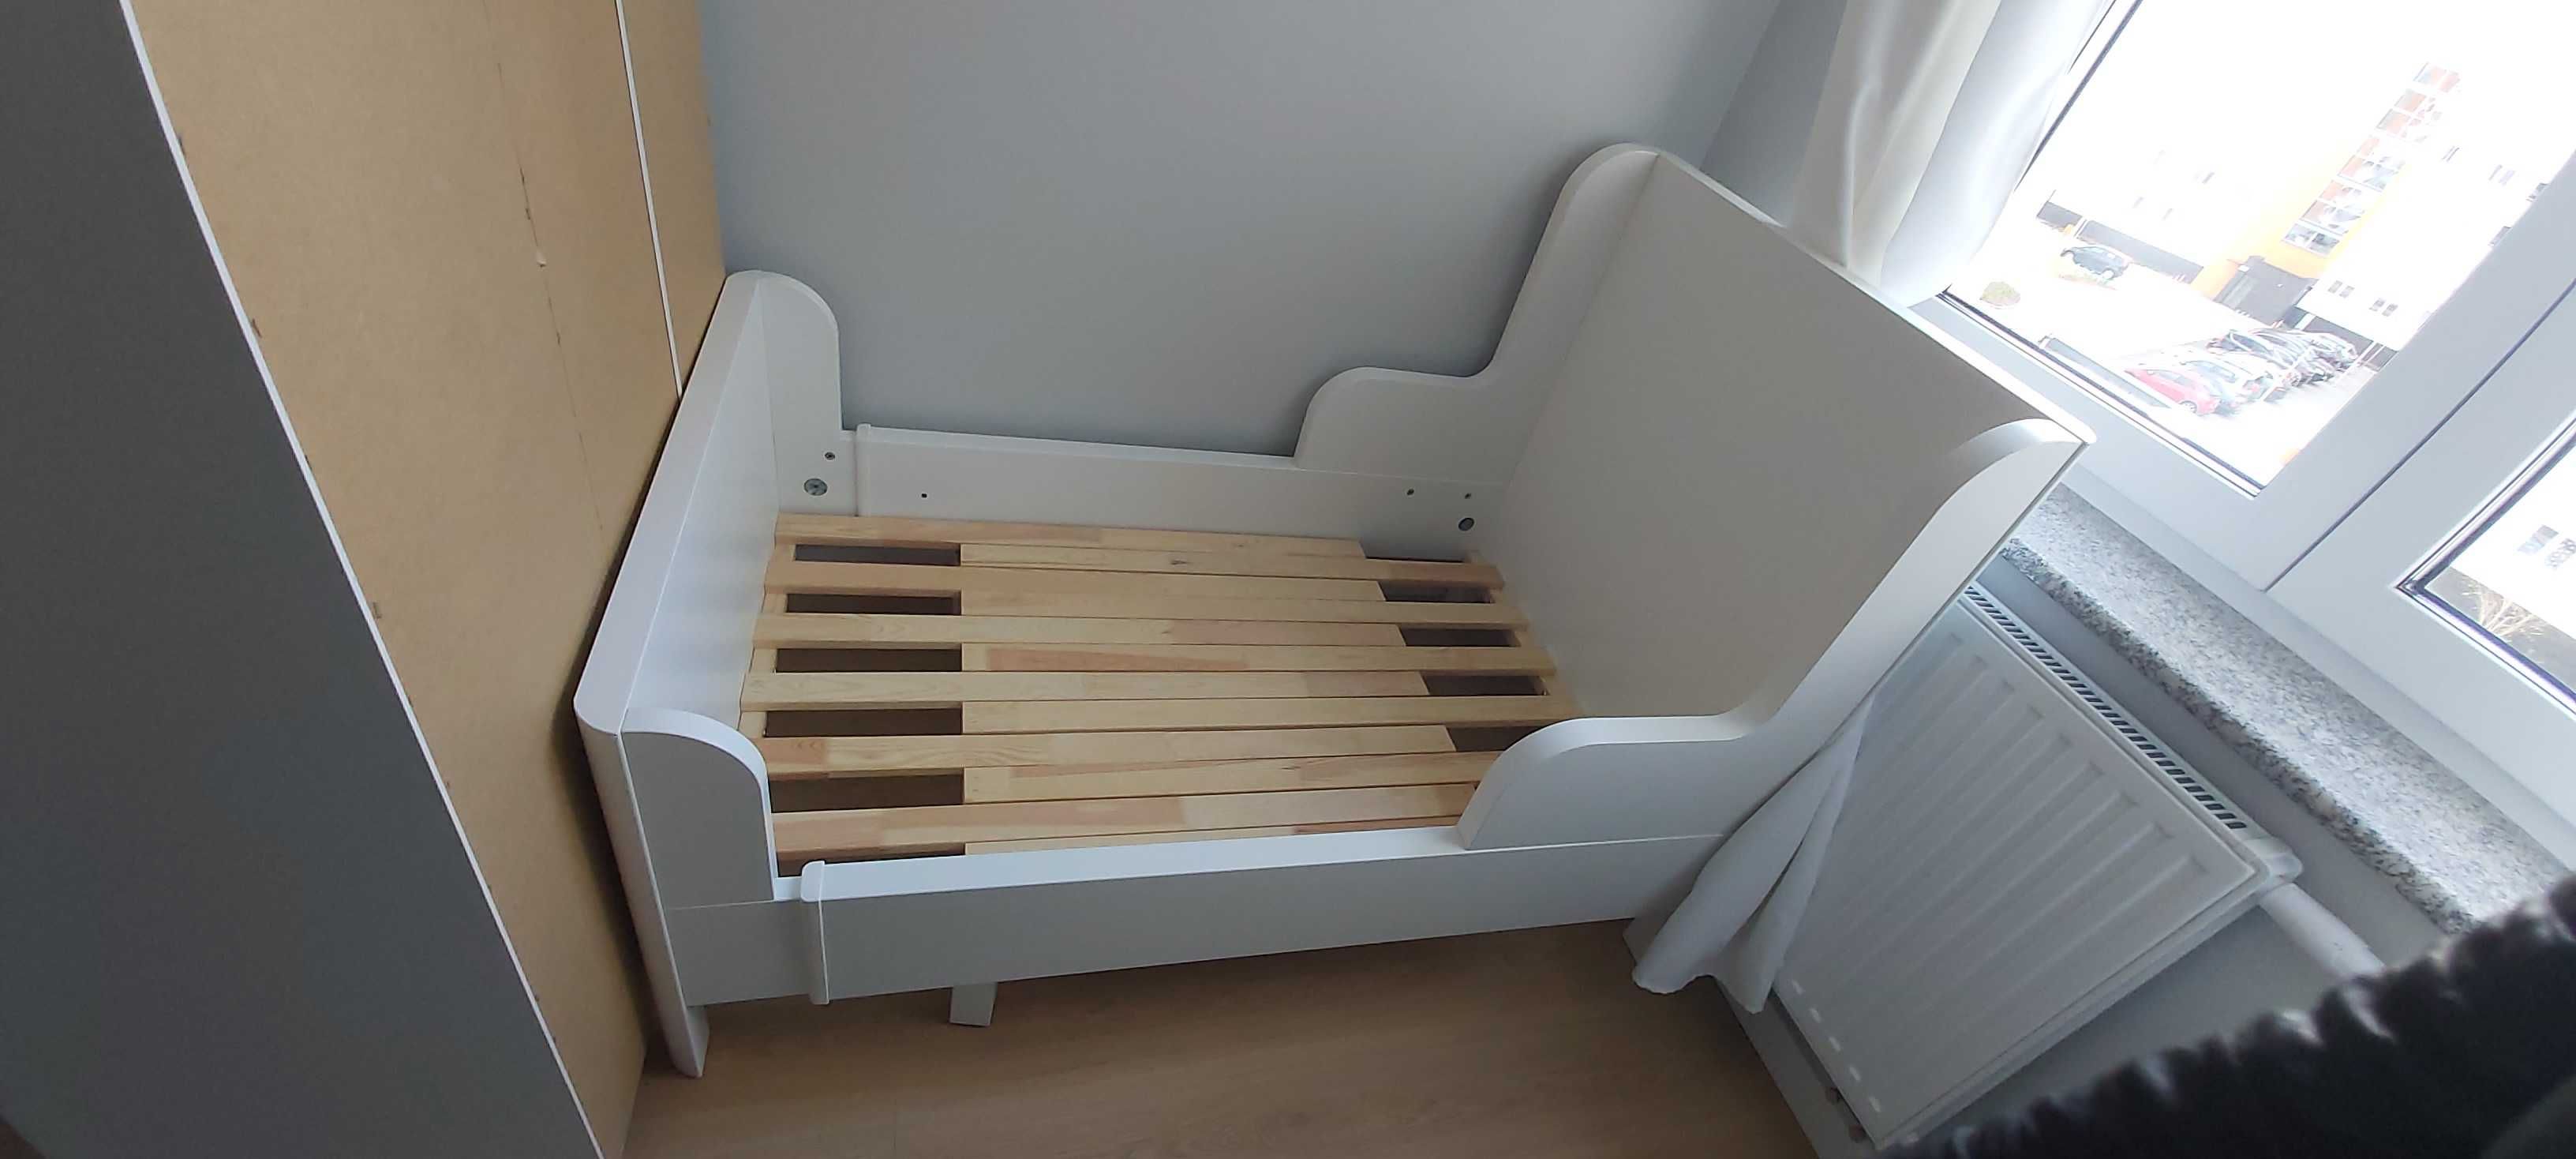 Łóżko rozsuwane Ikea Sundvik